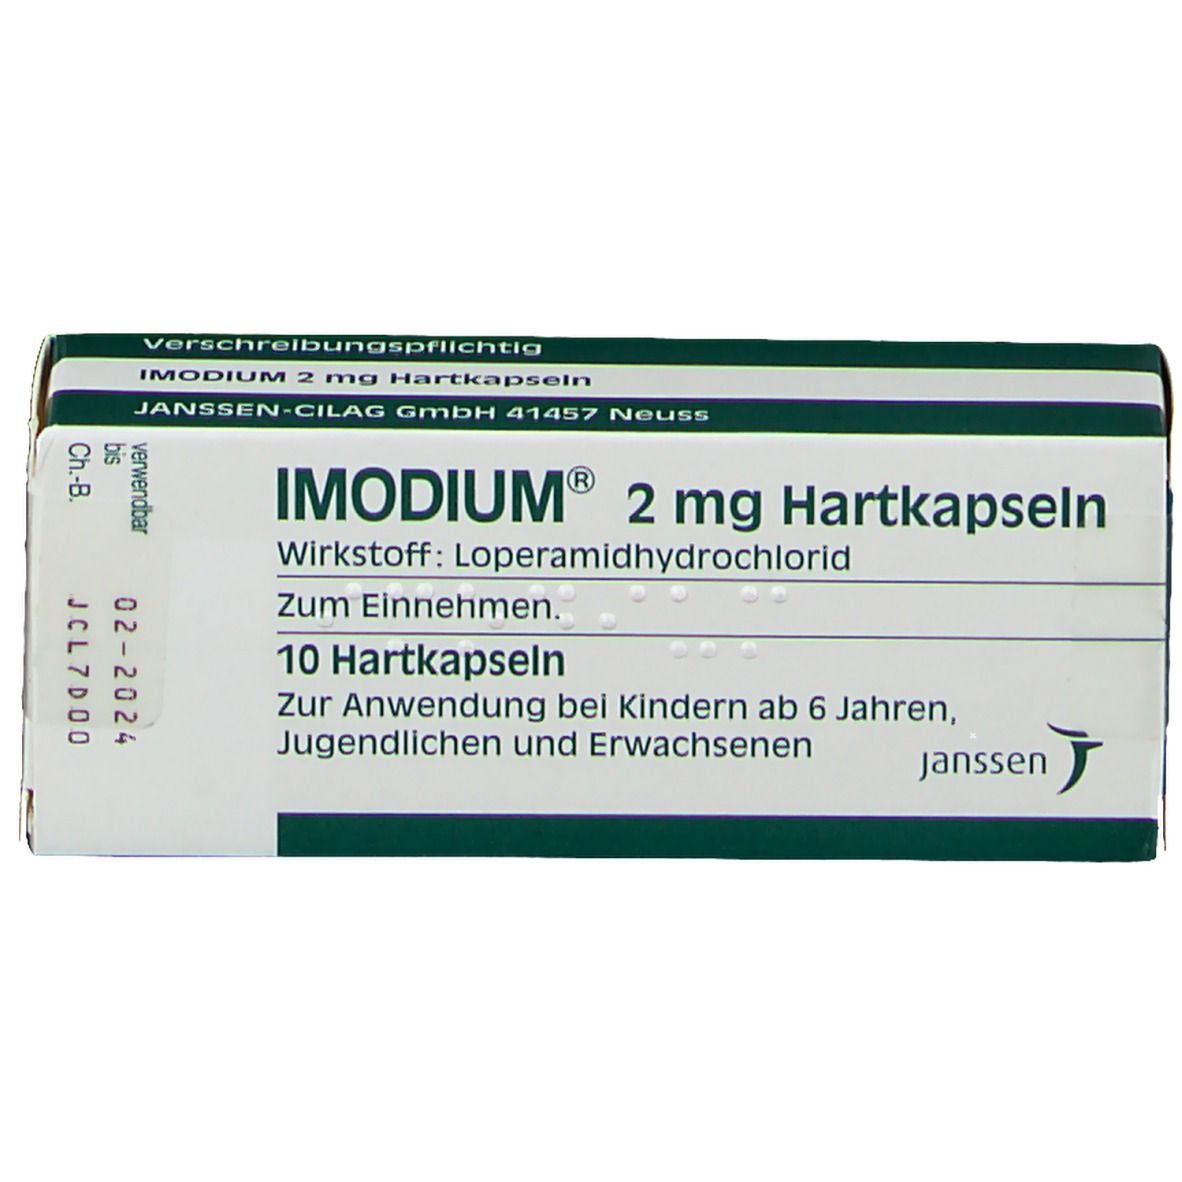 IMODIUM® 2 mg